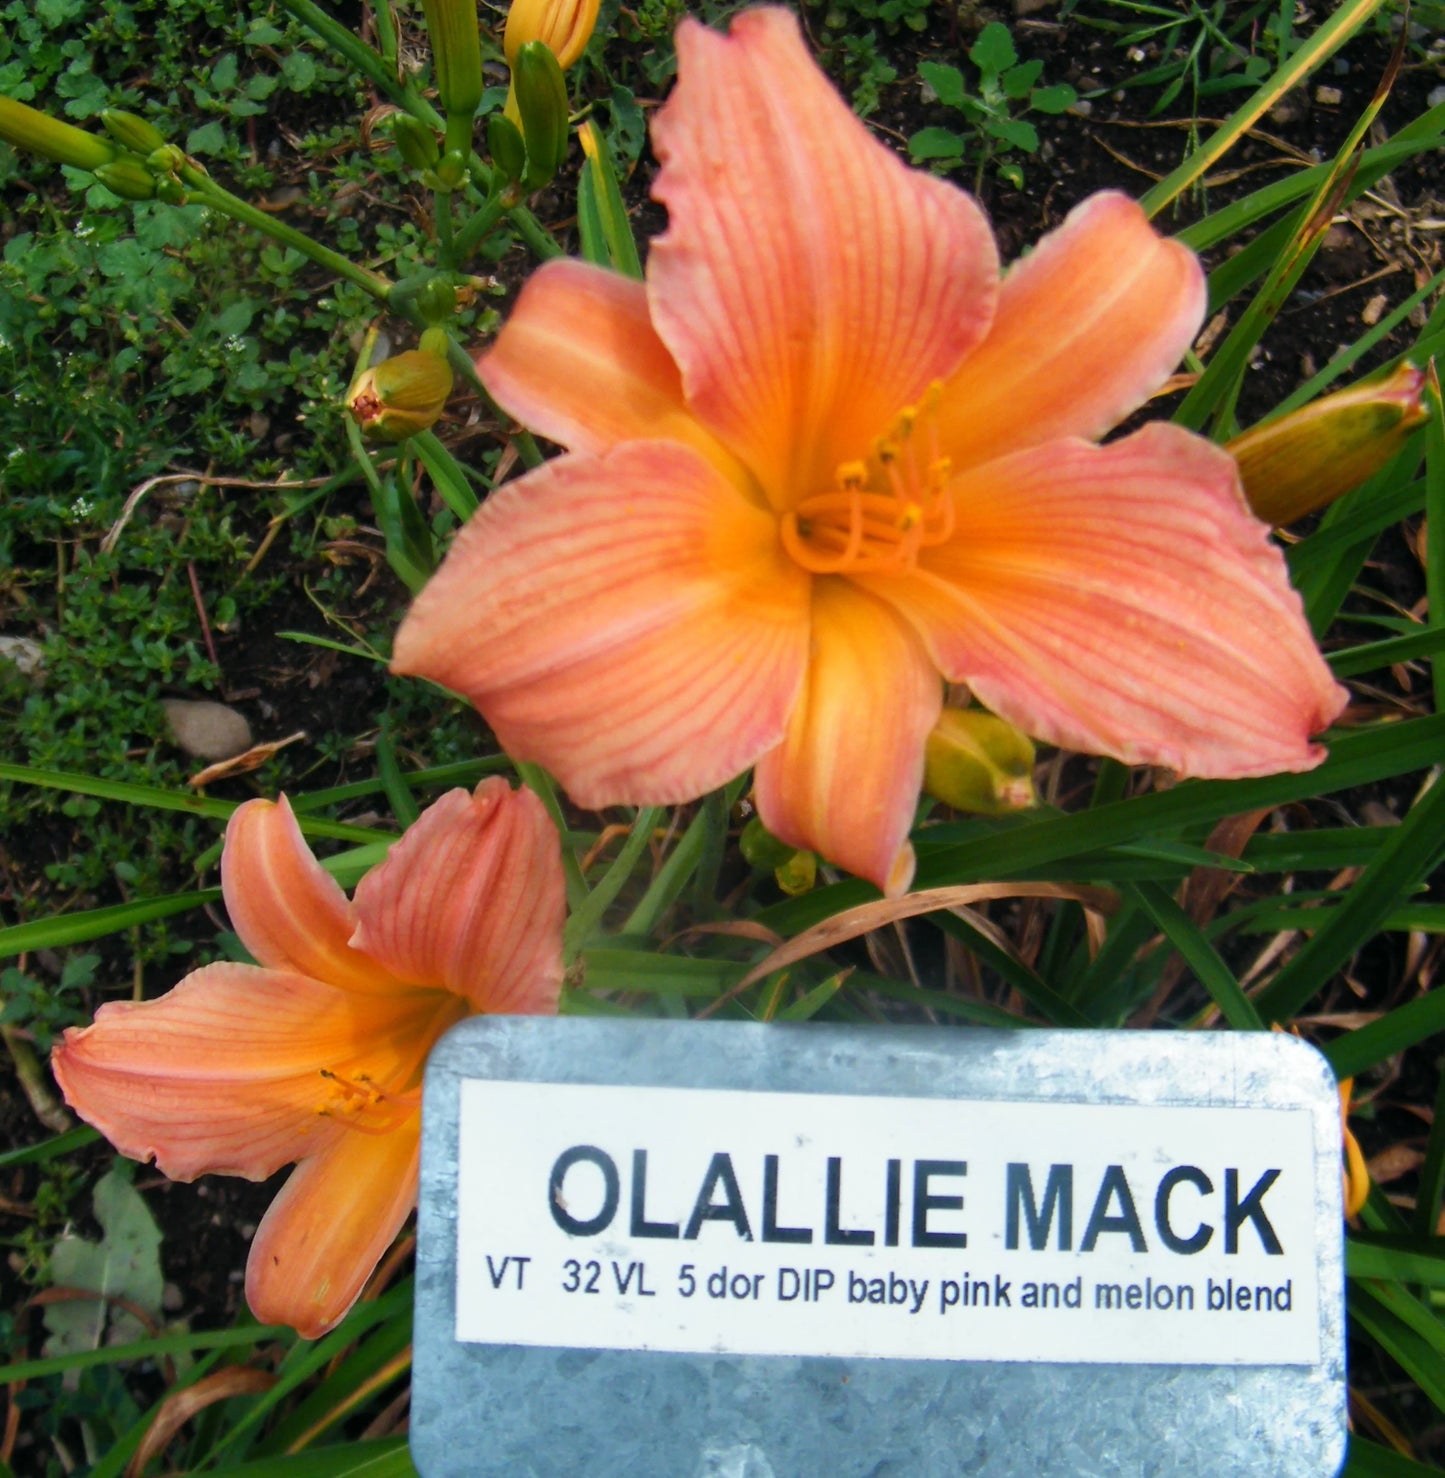 OLALLIE MACK